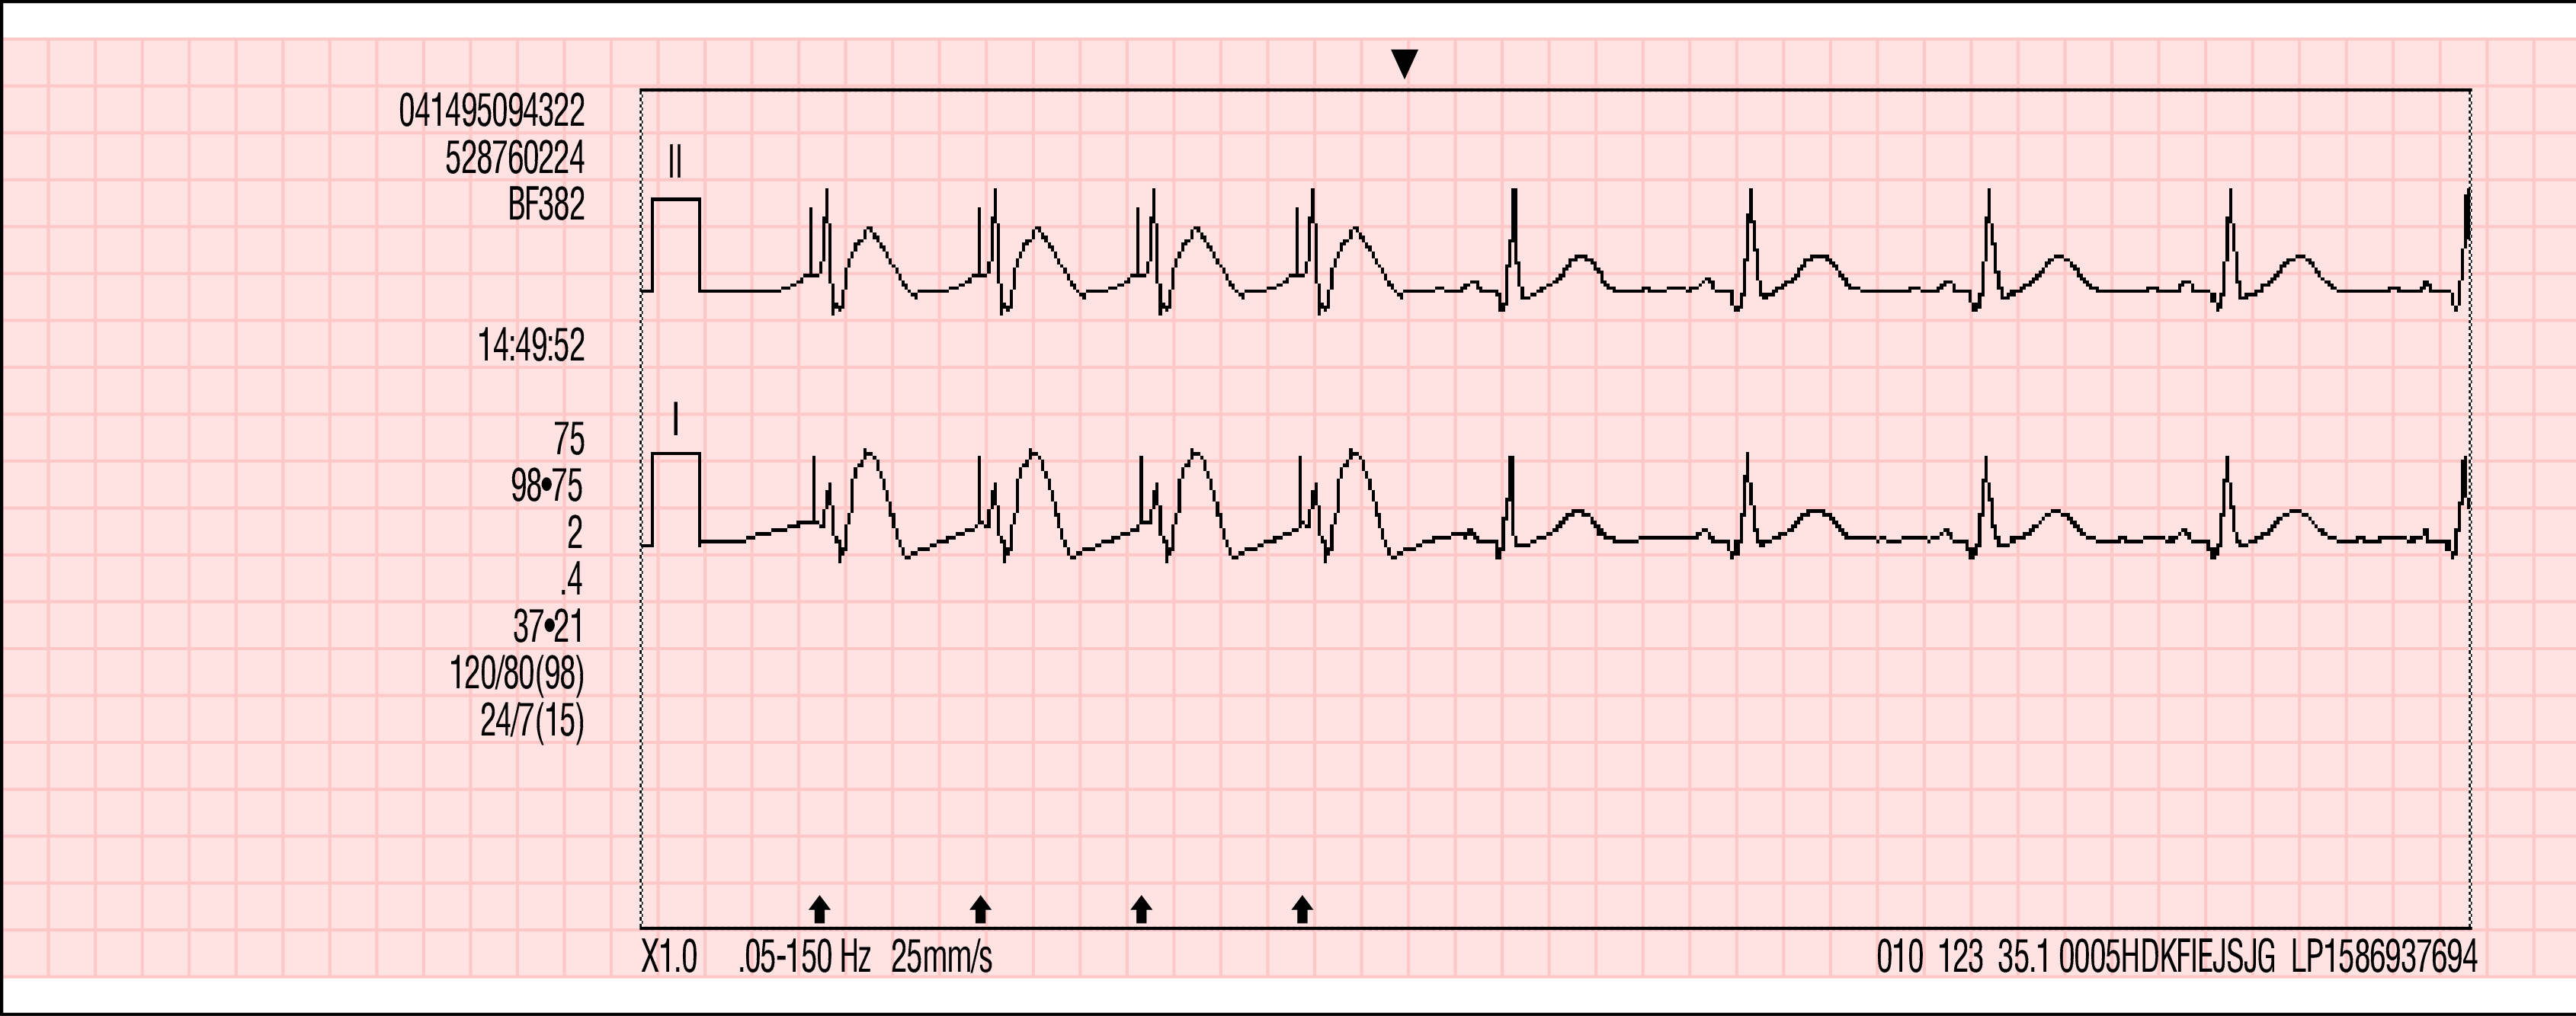 Obrázek 7-3 Příklady výtisků událostí spojených s křivkami Kapacita paměti Monitor/defibrilátor LIFEPAK 15 zachová údaje o dvou nebo více pacientech i po vypnutí napájení nebo vyjmutí baterií.